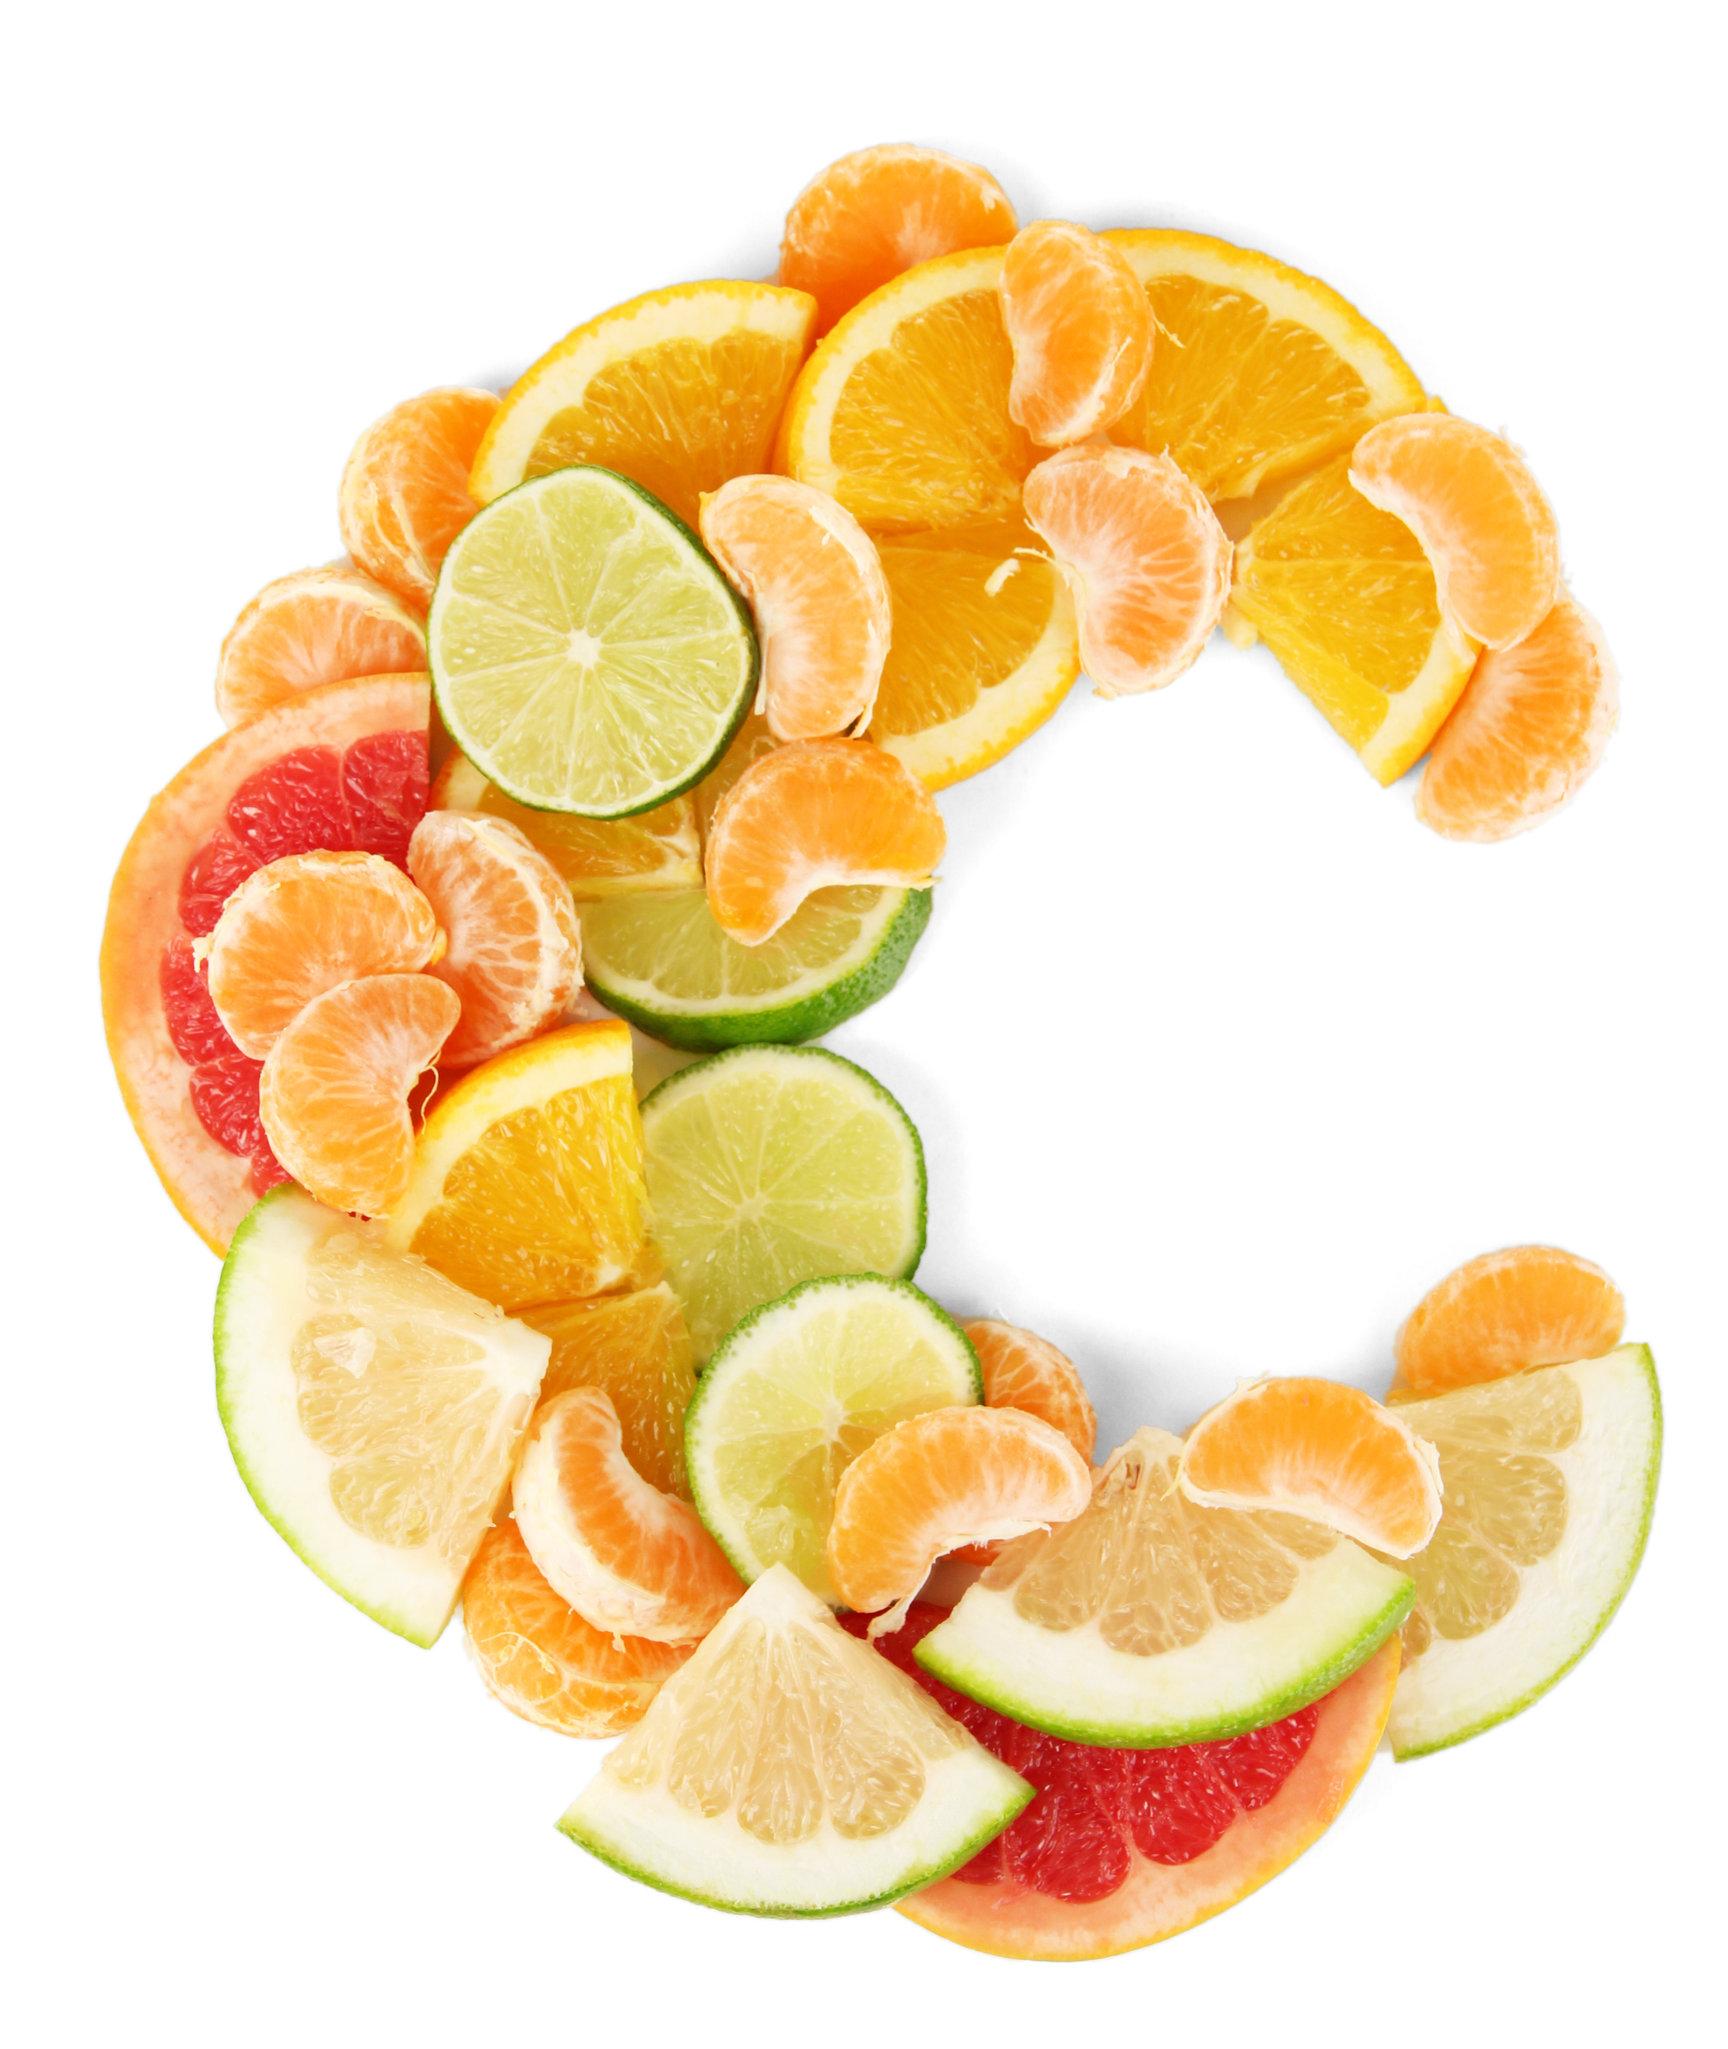 Ako uzimate previše vitamina C, mogli biste opasno narušiti zdravlje probave - Avaz